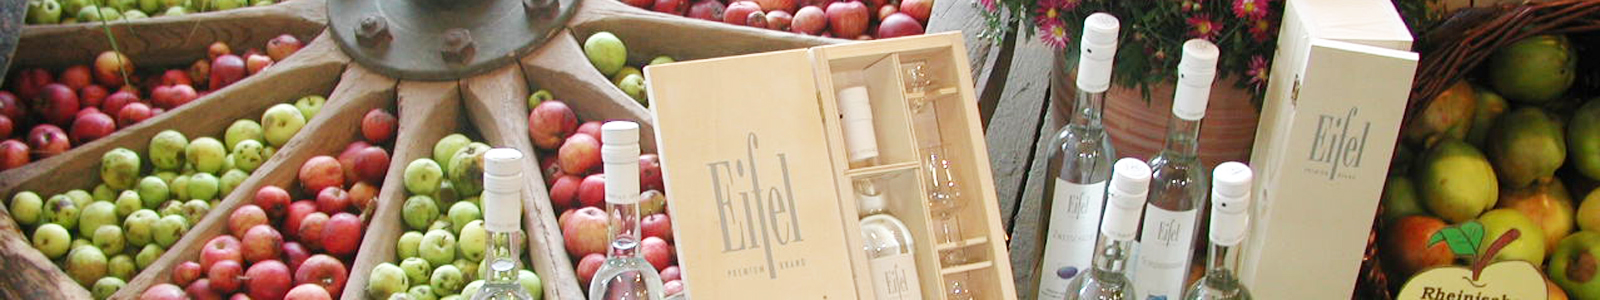 Regionale Produkte aus der Eifel, Äpfel und Schnaps ©DLR